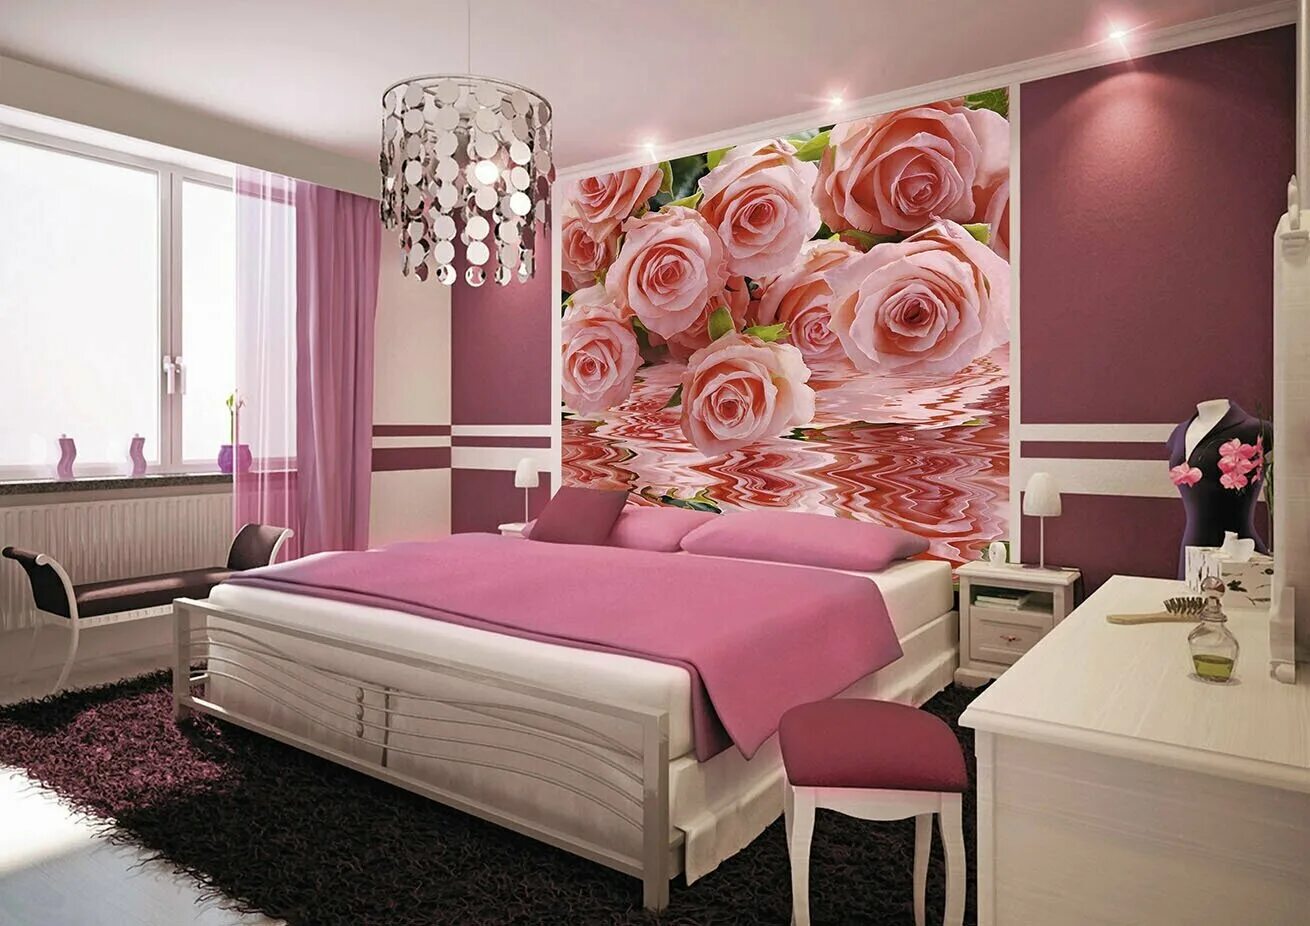 Обои мерлен ростов на дону. Спальня в розовых тонах. Спальня в розовом цвете. Обои для спальни в розовых тонах. Красивые фотообои в спальню.